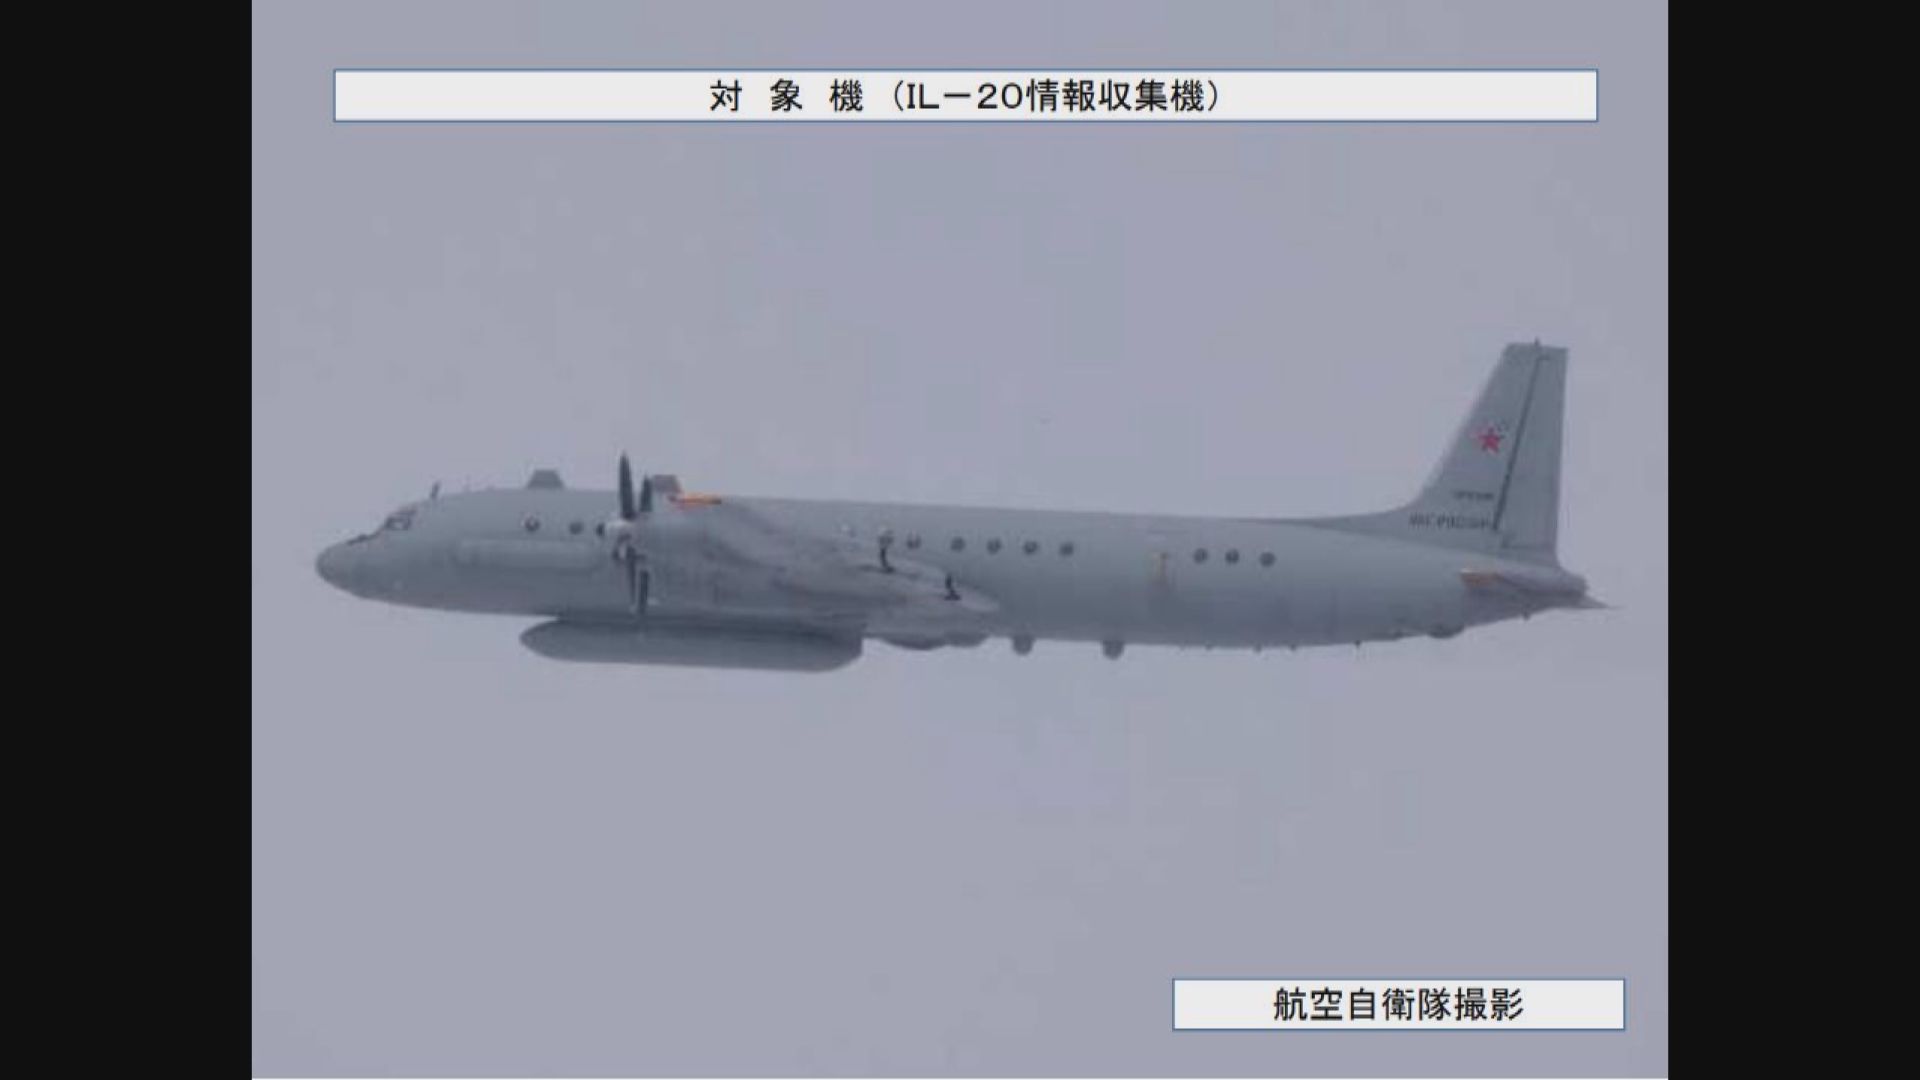 日本批評中俄戰機飛近日本領海行為挑釁